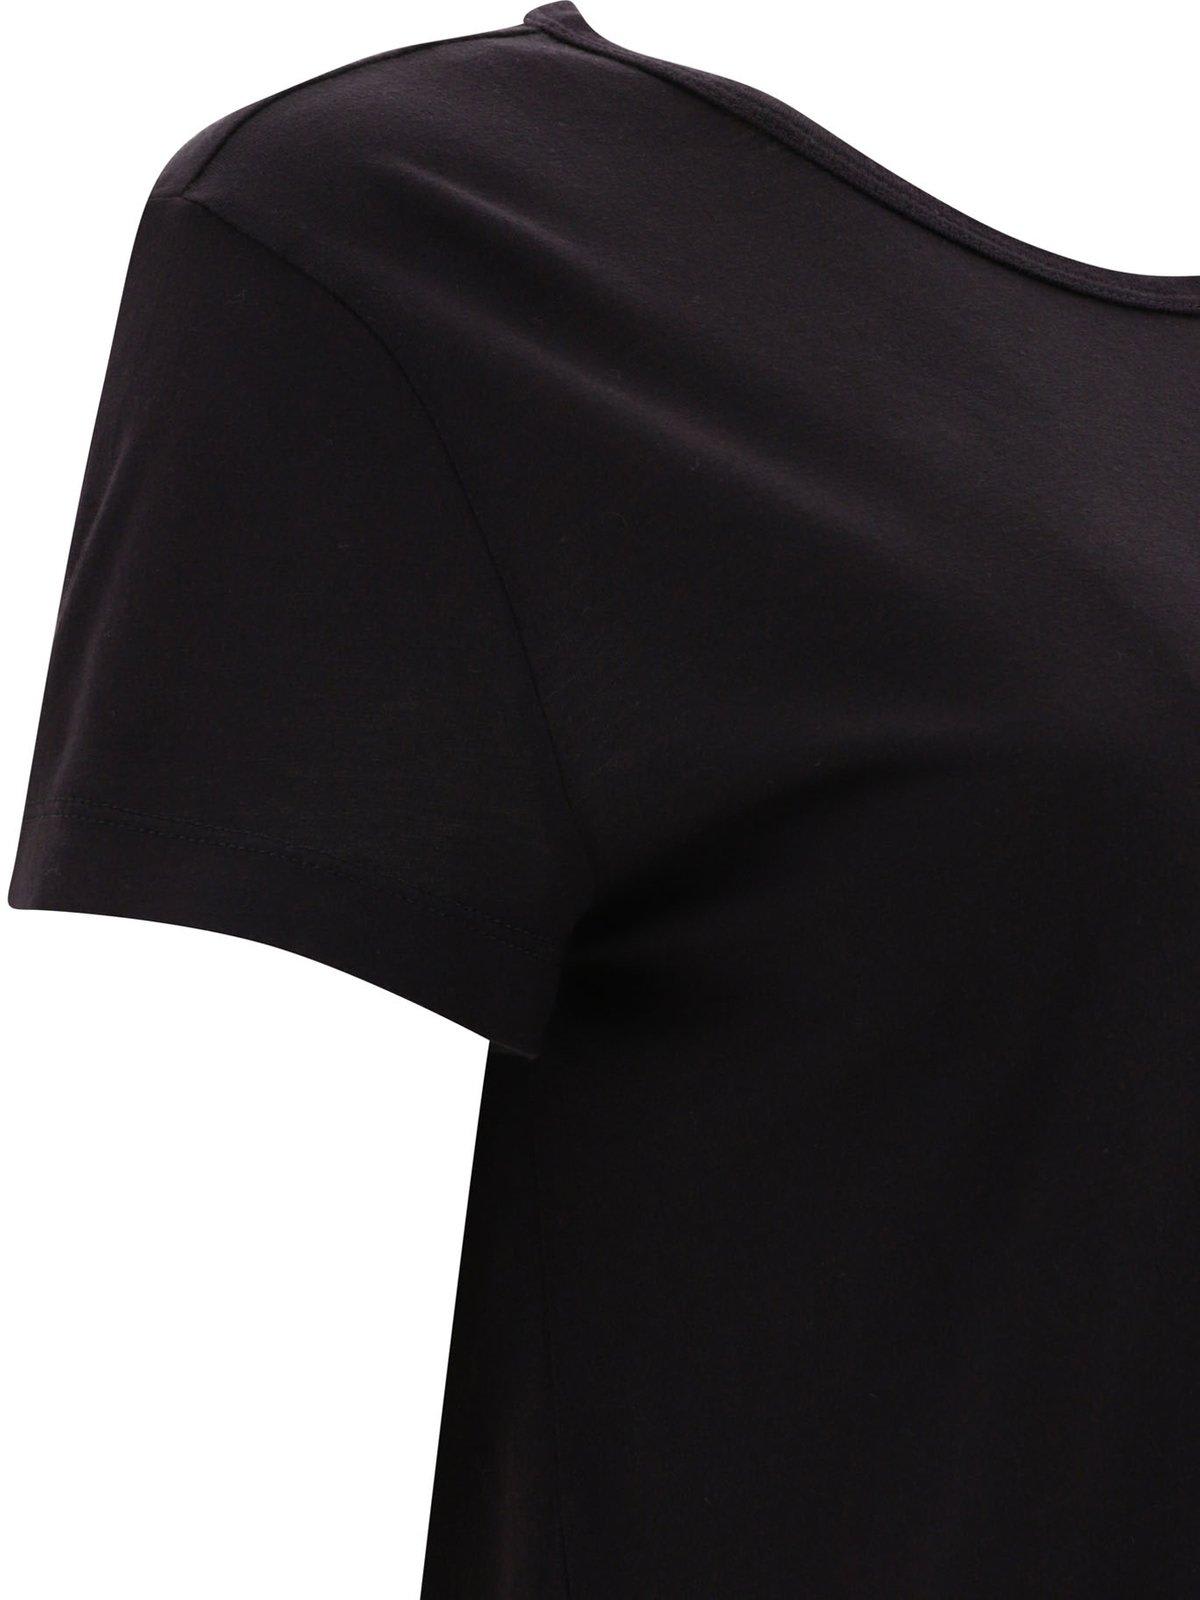 Shop Agolde Drew Short Sleeved T-shirt In Blk Black